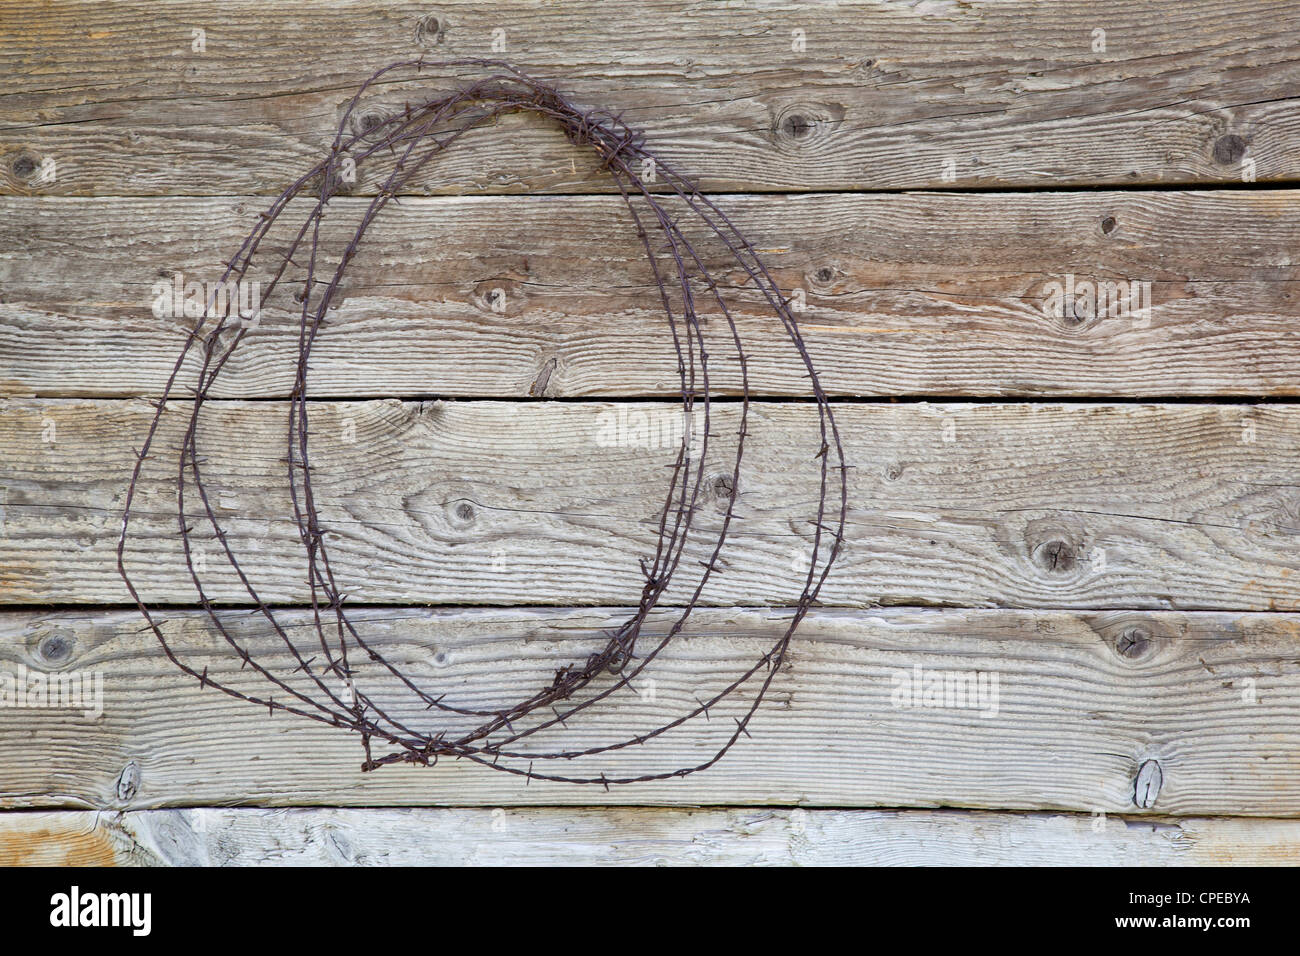 La bobine de fil de fer barbelé rouillé accroché sur un mur de la grange en bois patiné Banque D'Images